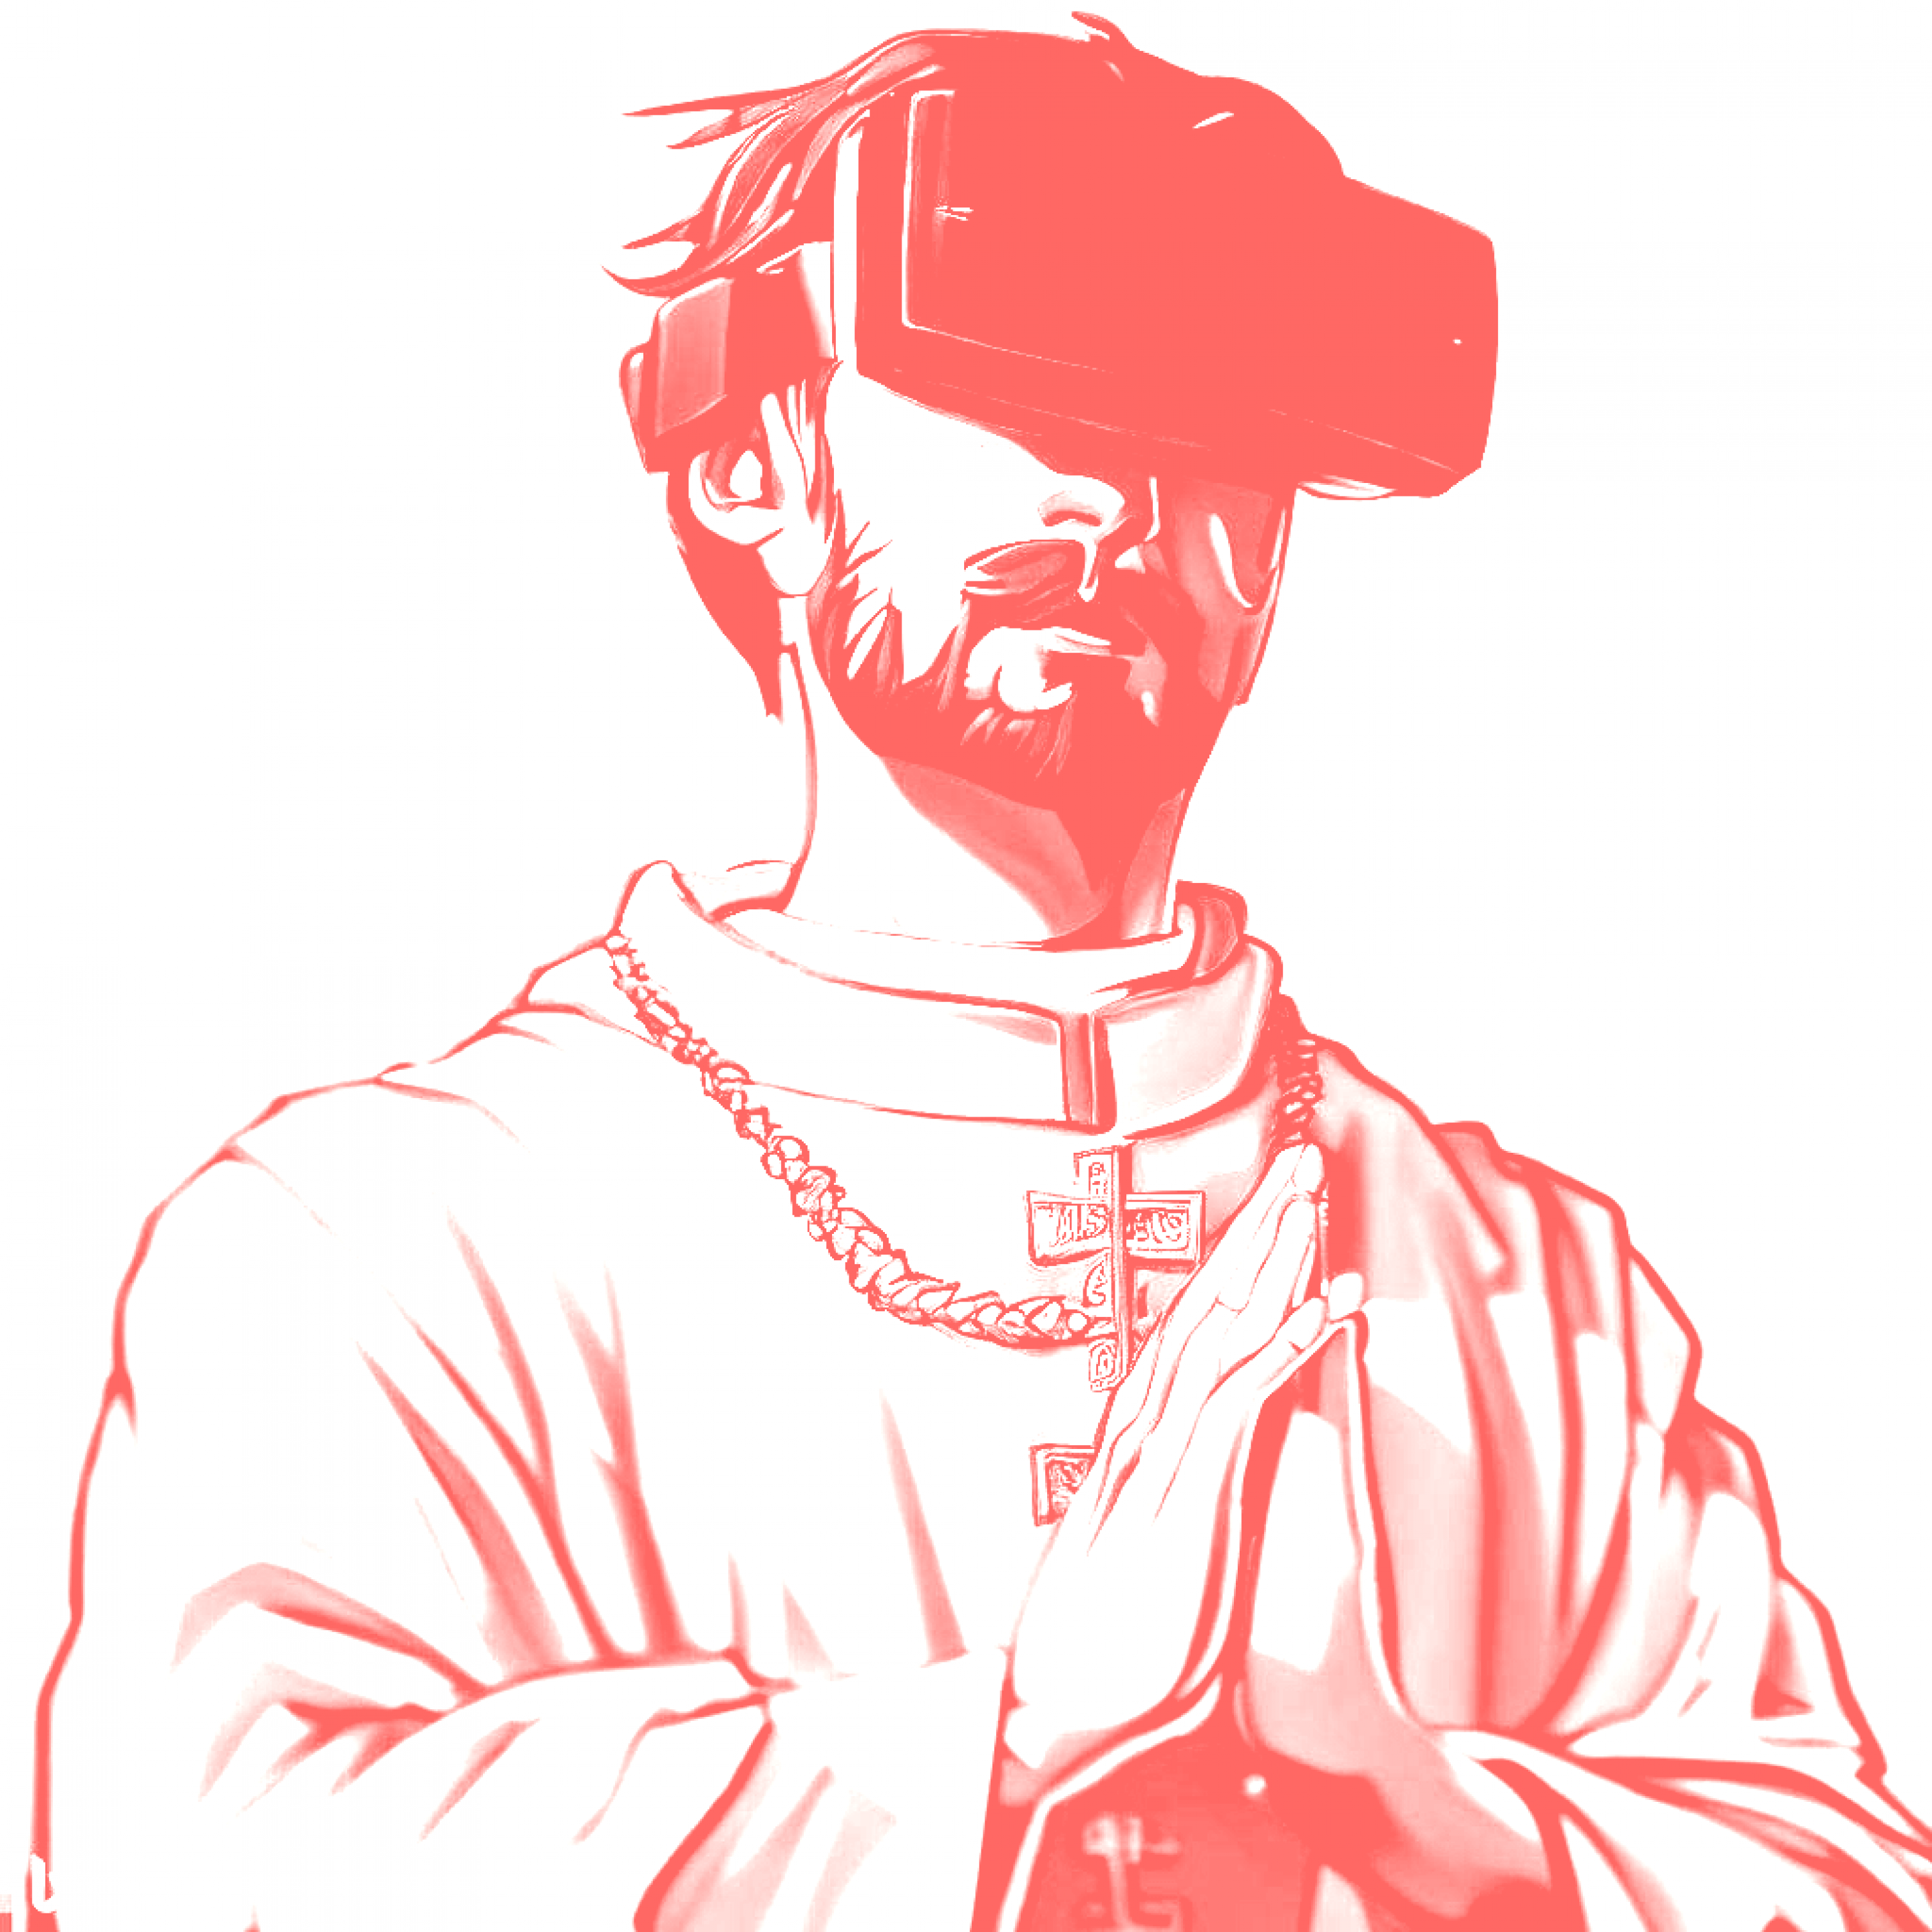 La visión de Santo Timoteo